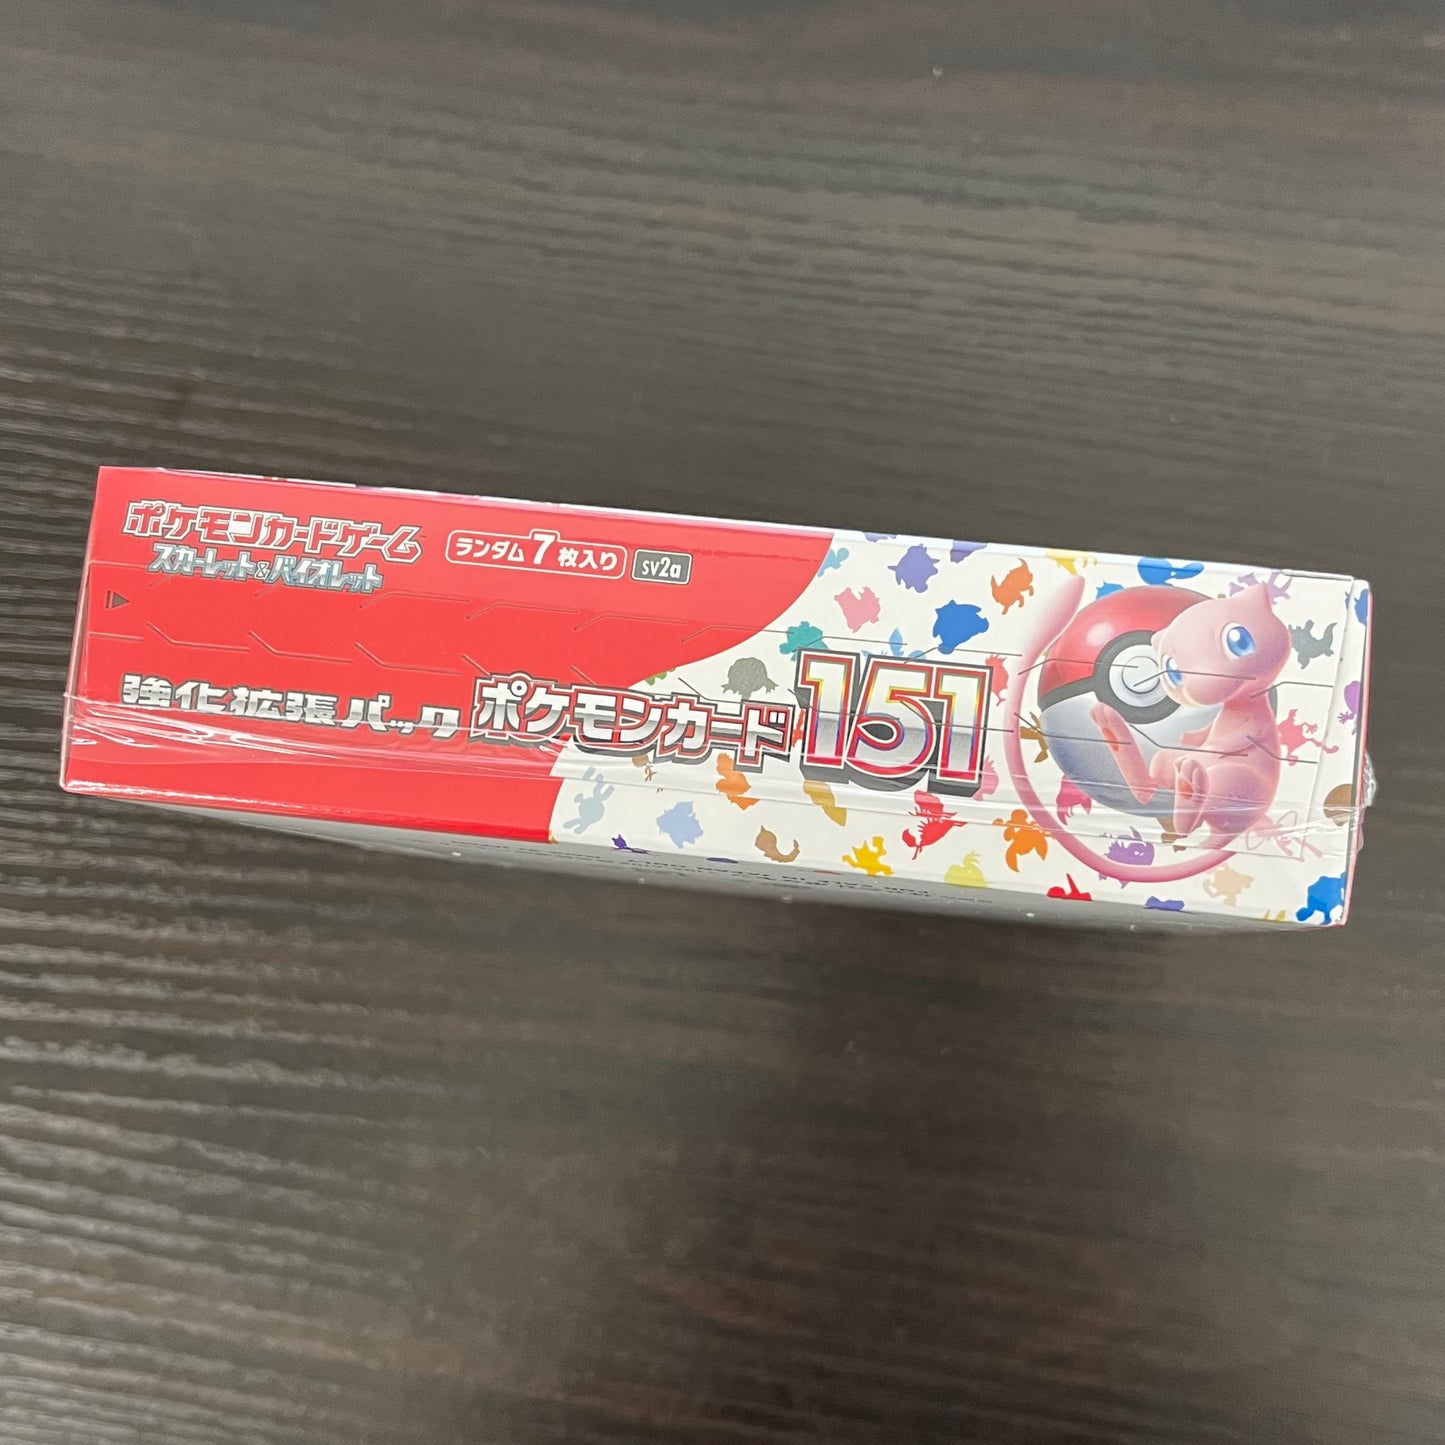 Pokemon - Scarlet & Violet - 151 - Japanese Booster Pack 